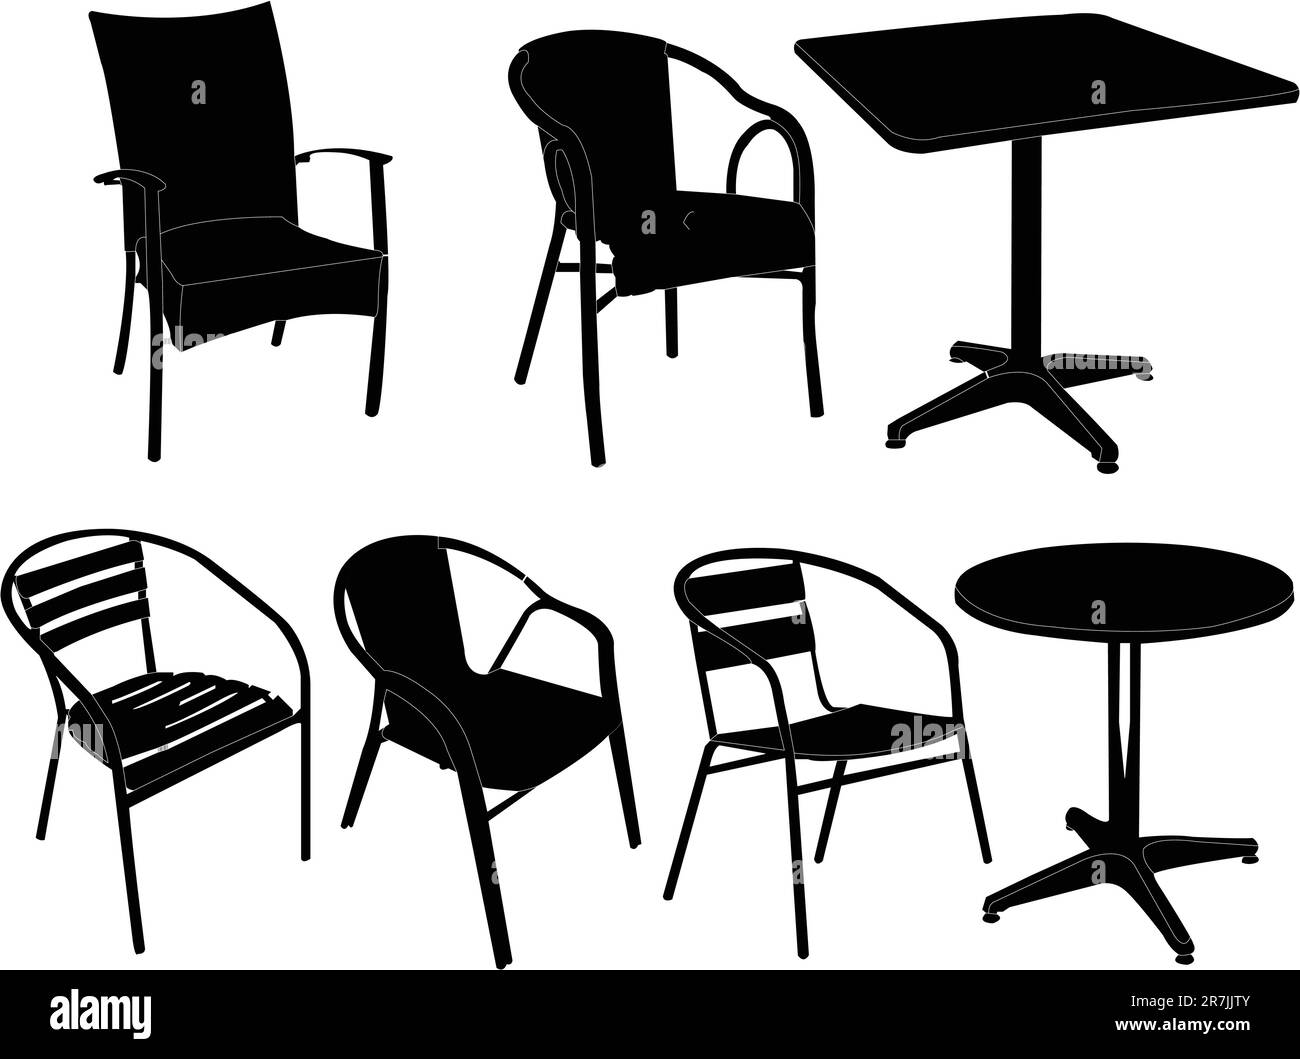 Illustration: Tische und Stühle - Vektor Stock Vektor